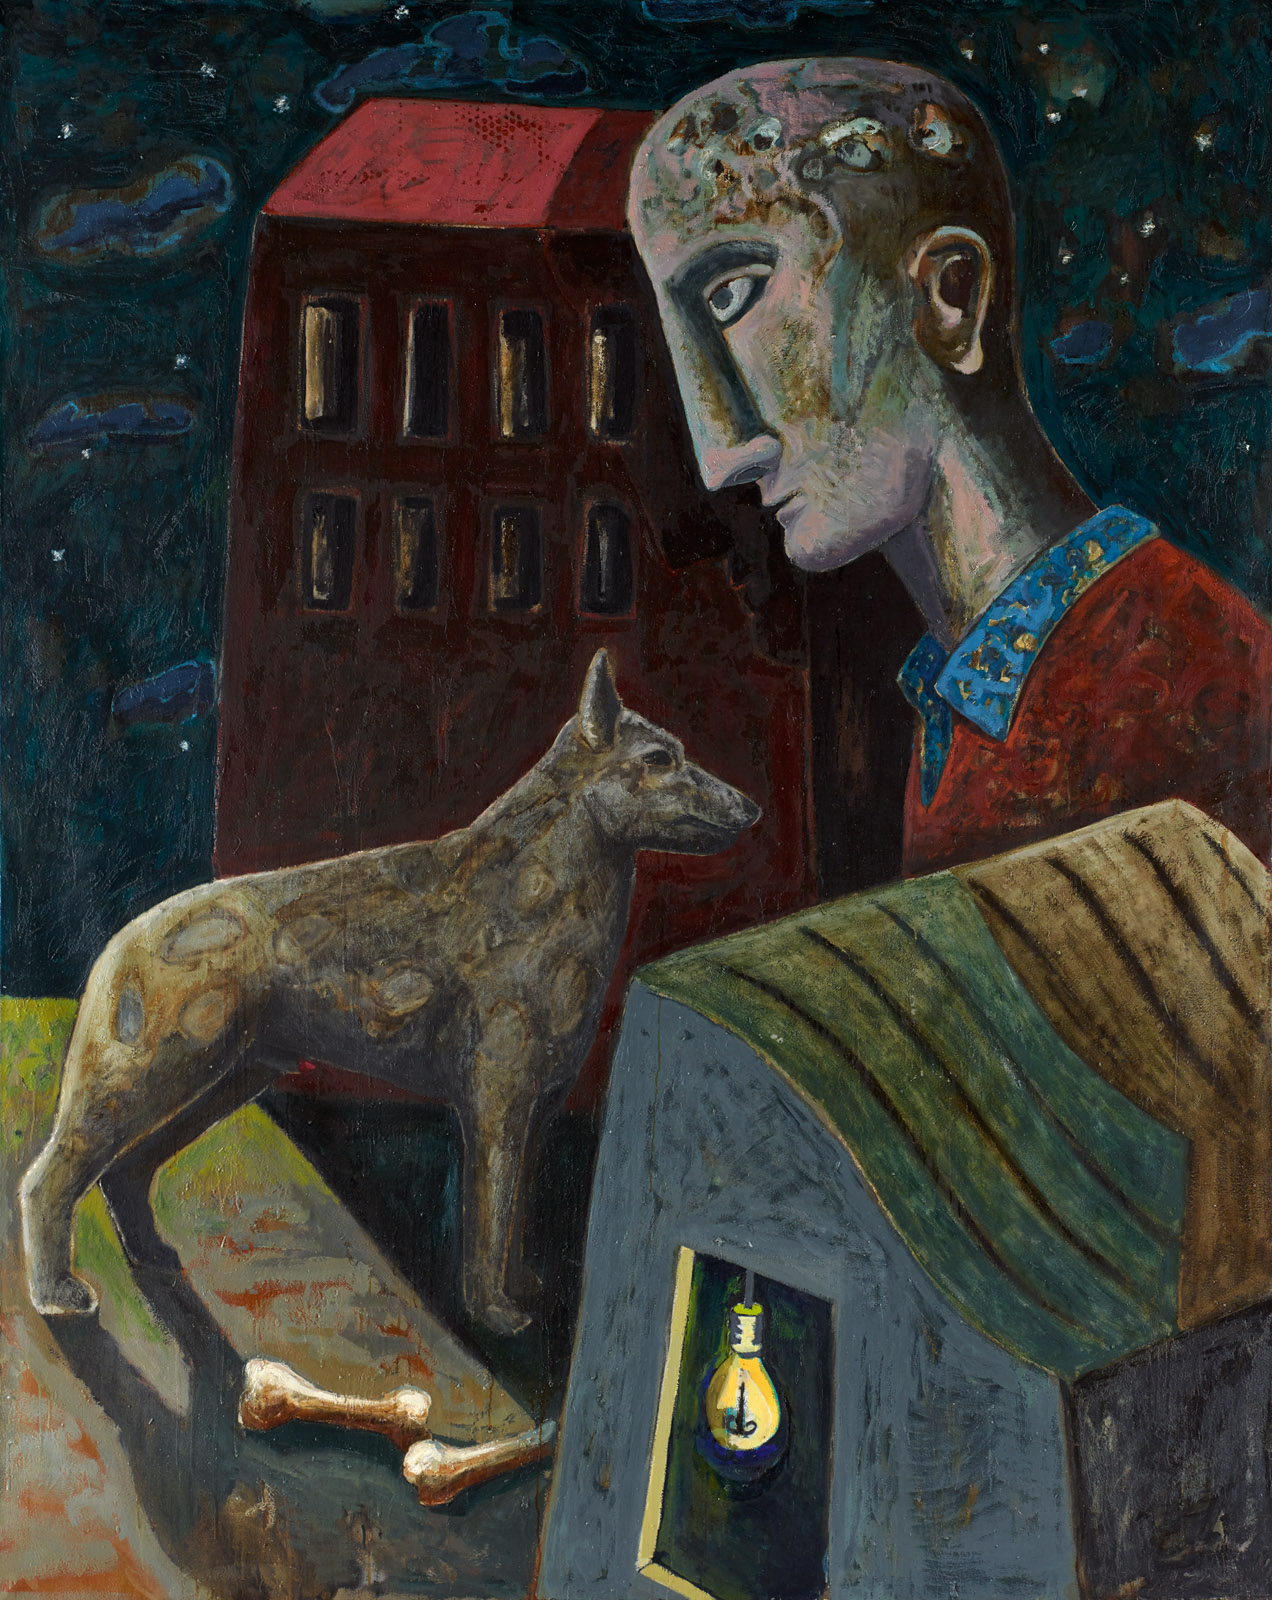 Peter Chevalier: Hund, mit zwei Knochen, 1983, Öl auf Leinwand, 250 x 200 cm